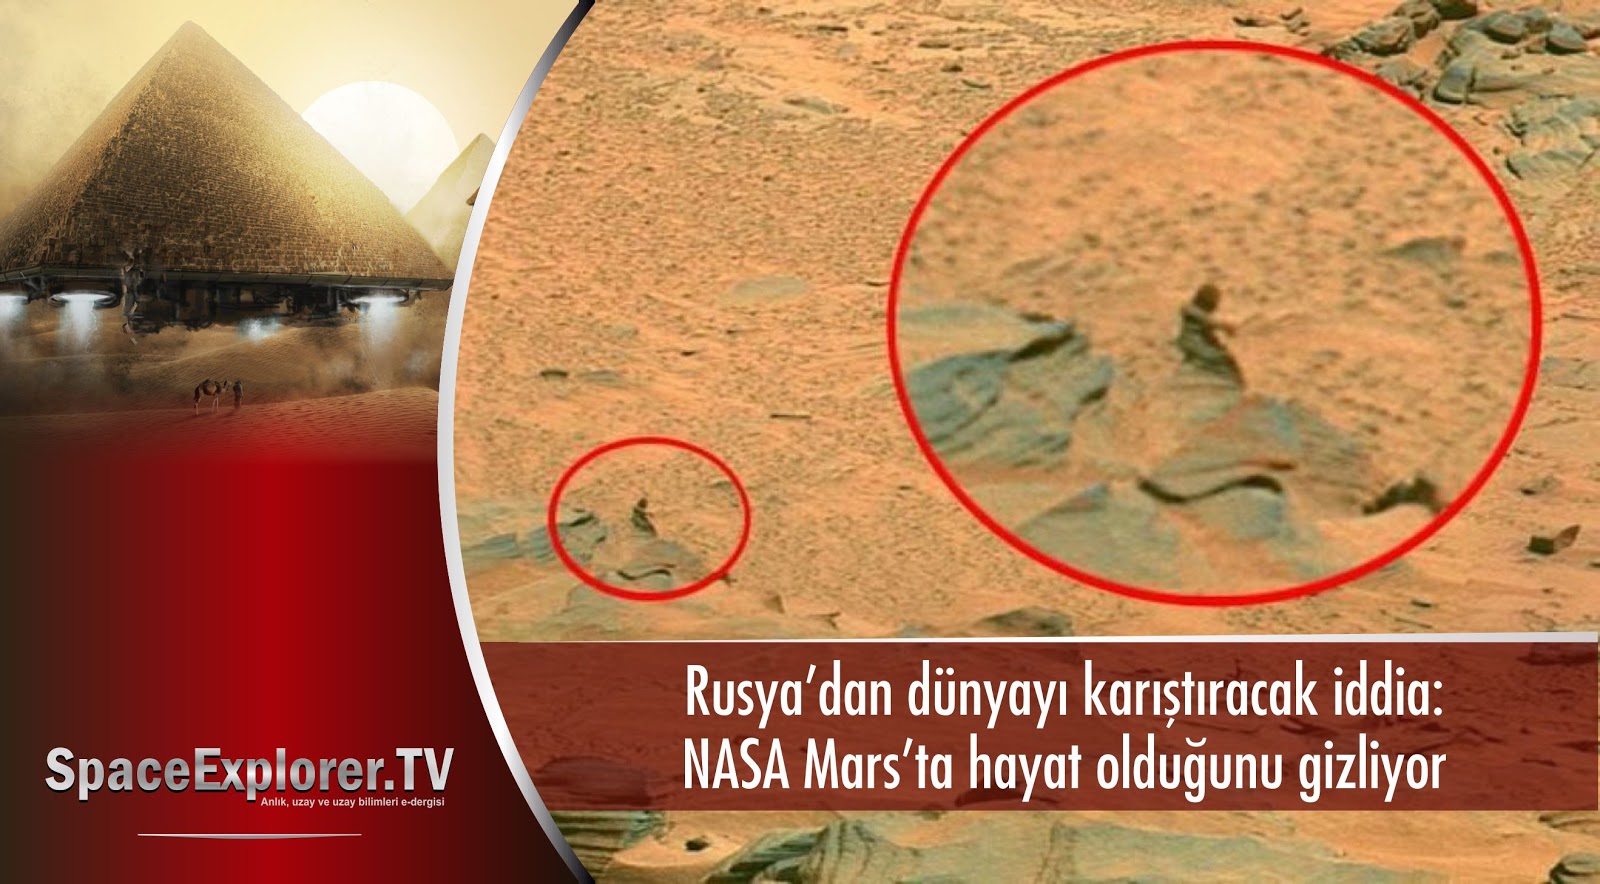 Videolar, Rusya, Rusya uzay araştırmaları, Mars, Mars'ta insan mı var, Mars'ta yaşam var mı, Mars'taki omurga iskeleti, NASA, NASA neden gizliyor, 